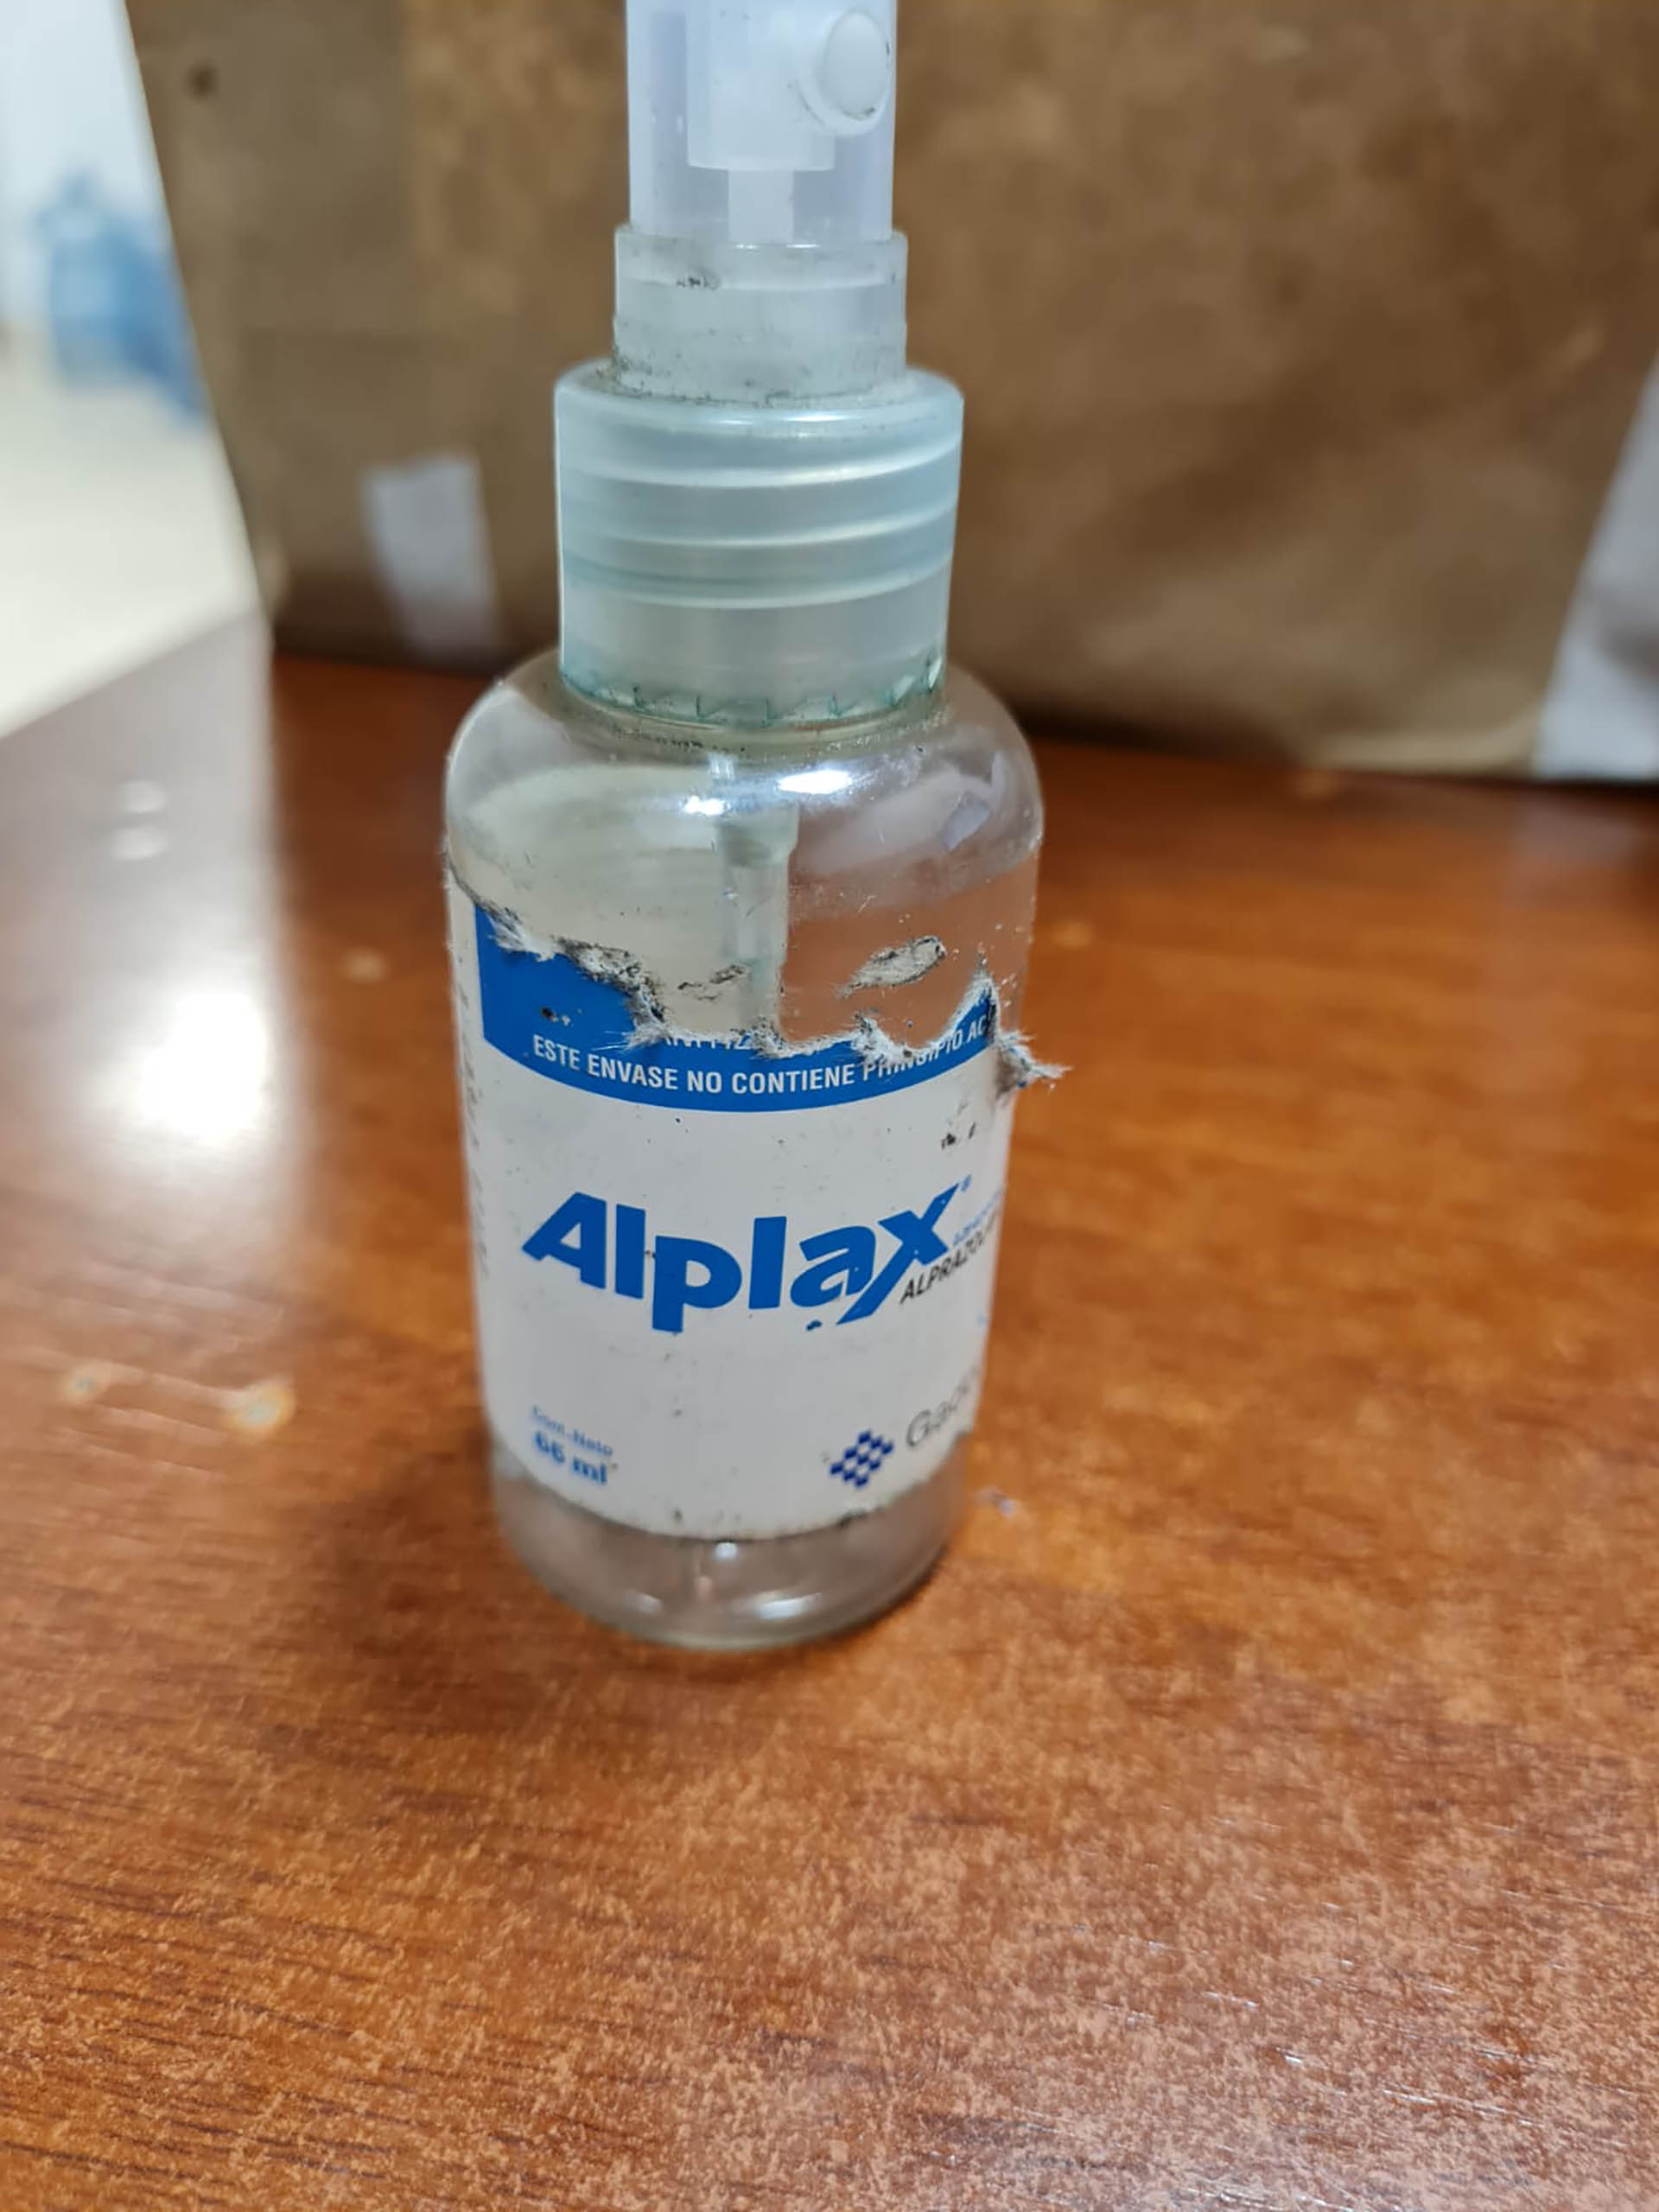 El spray que presuntamente utilizaba para drogar a sus víctimas